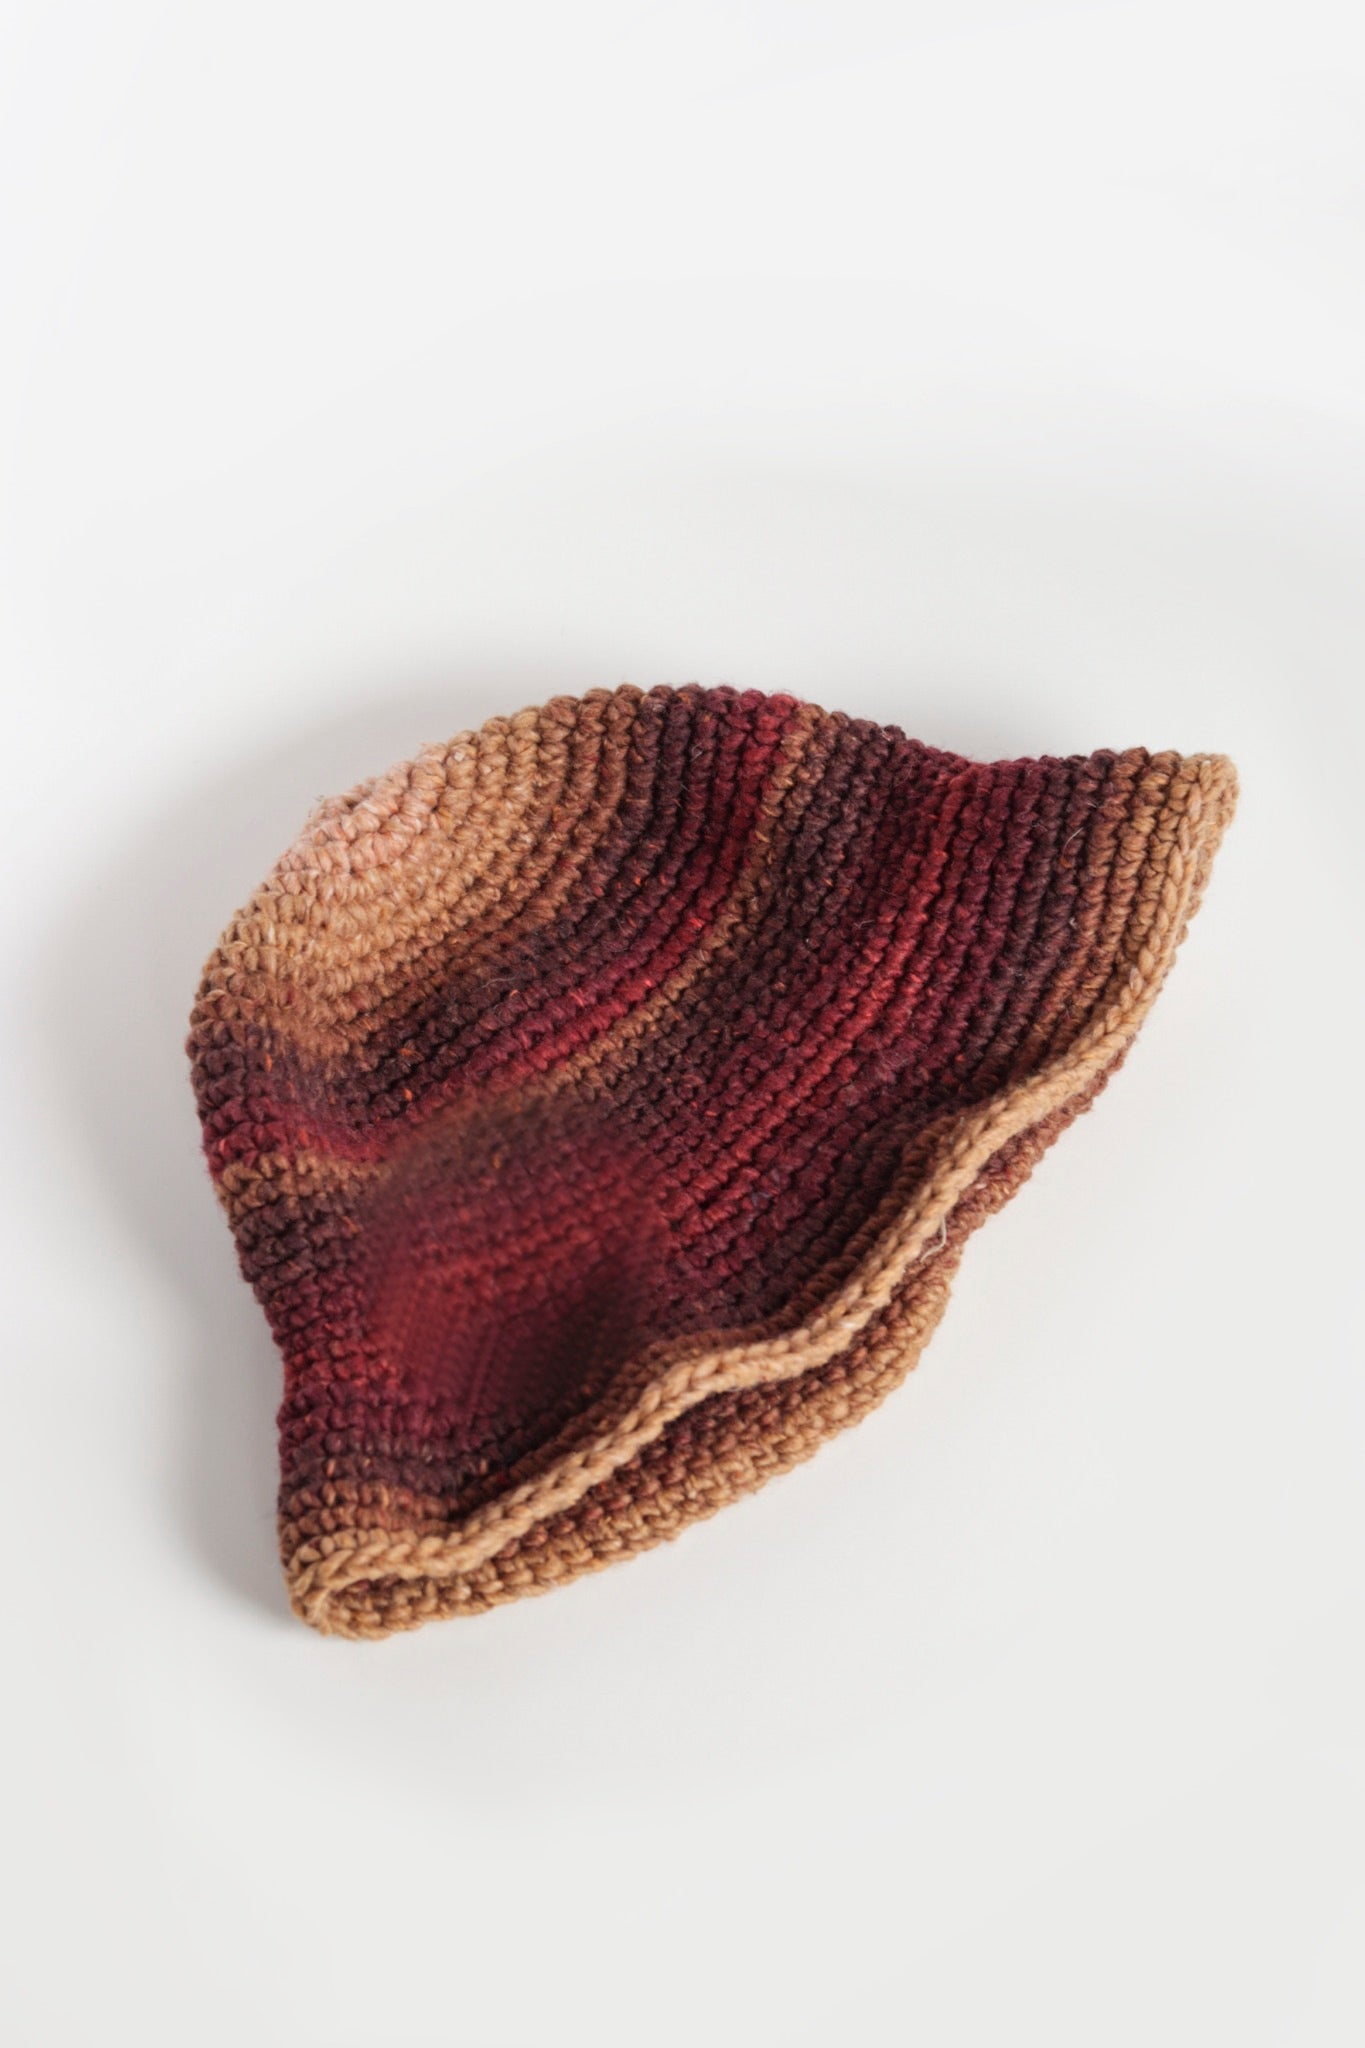 Crochet Bucket Hat - Horizon